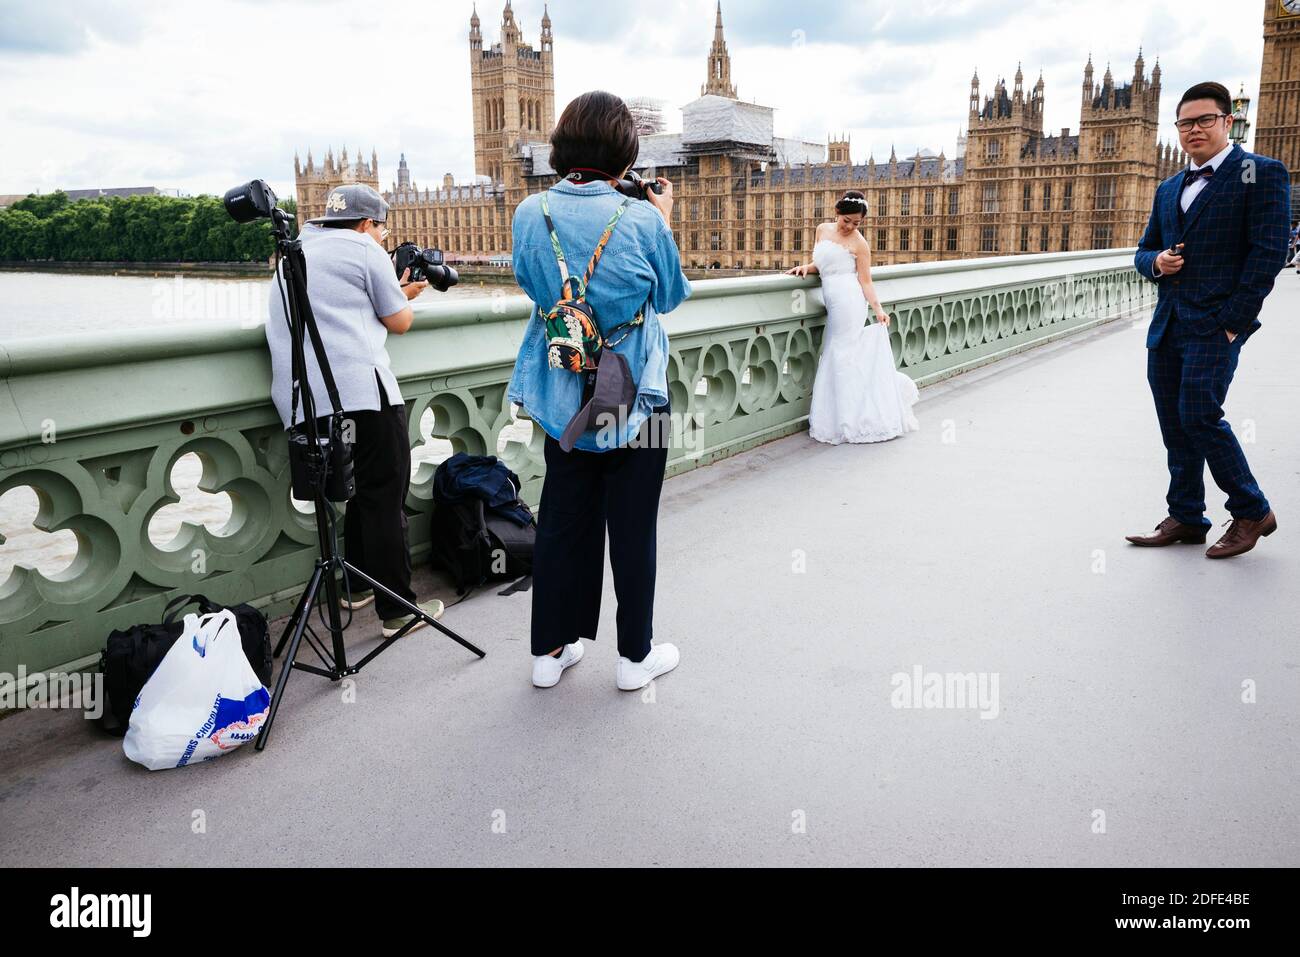 Séance photo à des jeunes asiatiques récemment mariés sur le pont de Westminster. Londres, Angleterre, Royaume-Uni, Europe Banque D'Images